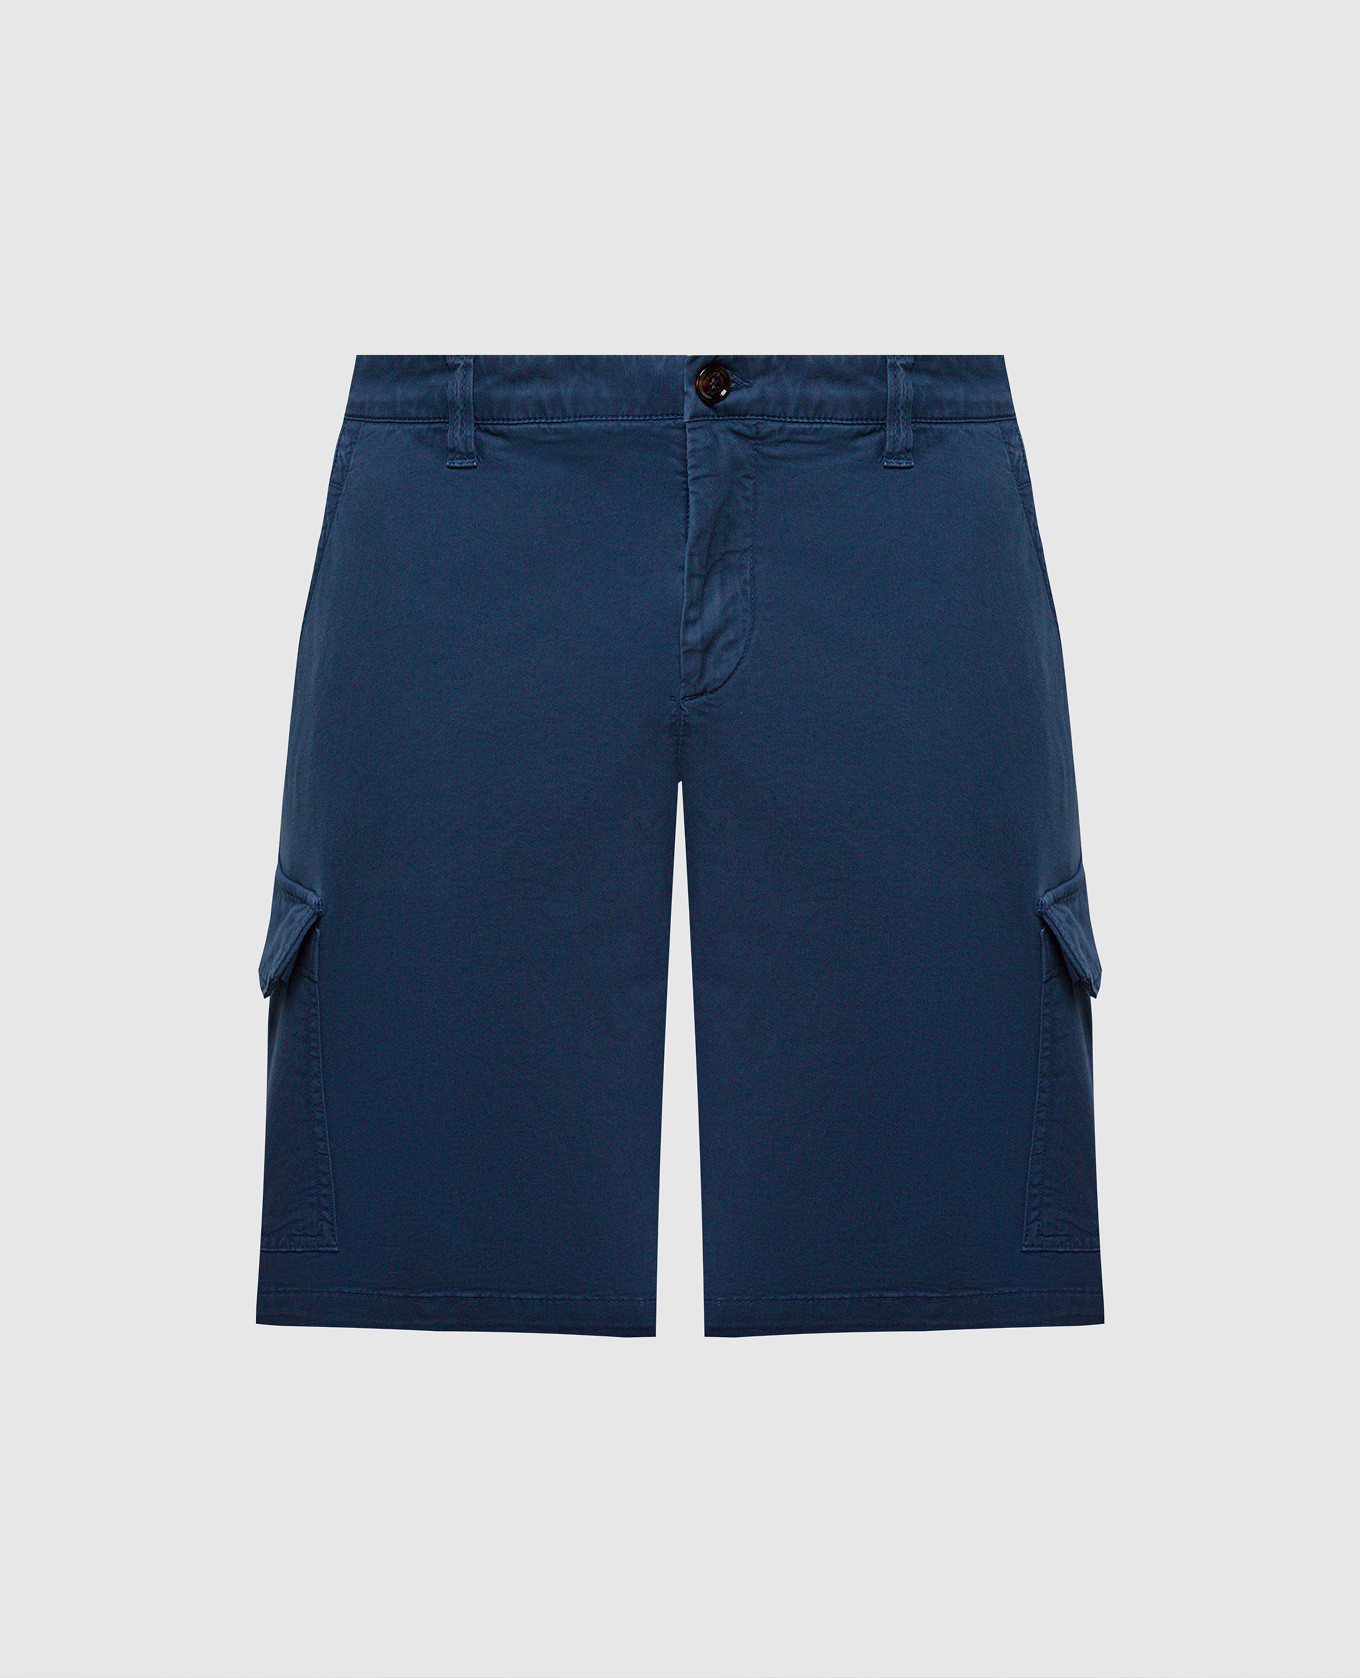 ARON blue cargo shorts